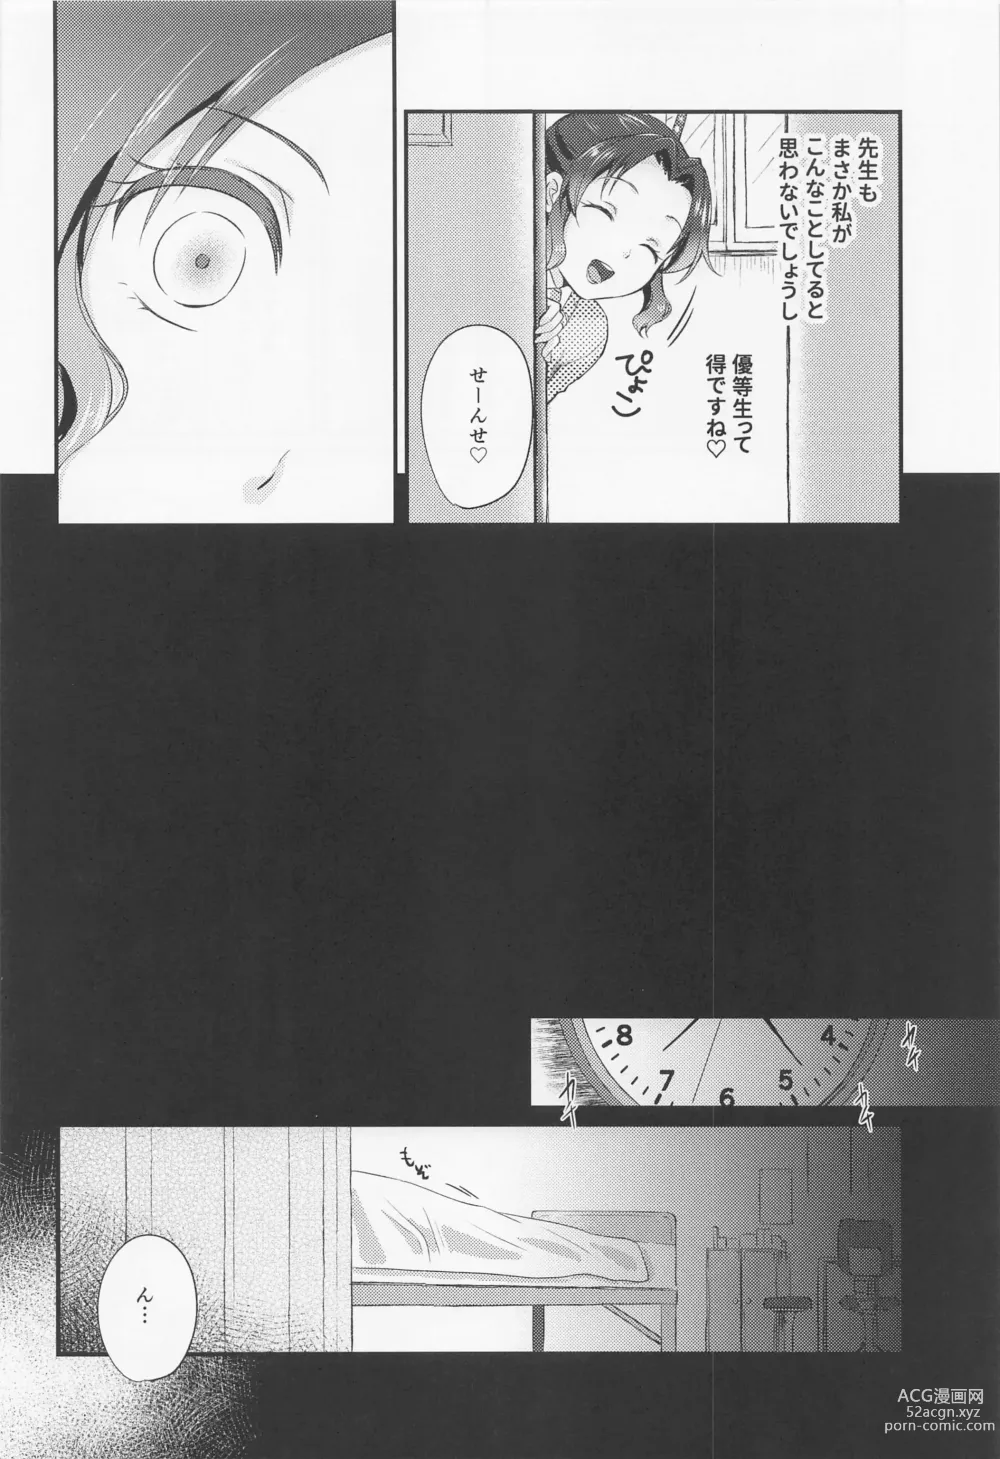 Page 9 of doujinshi Amakara Oxymoron